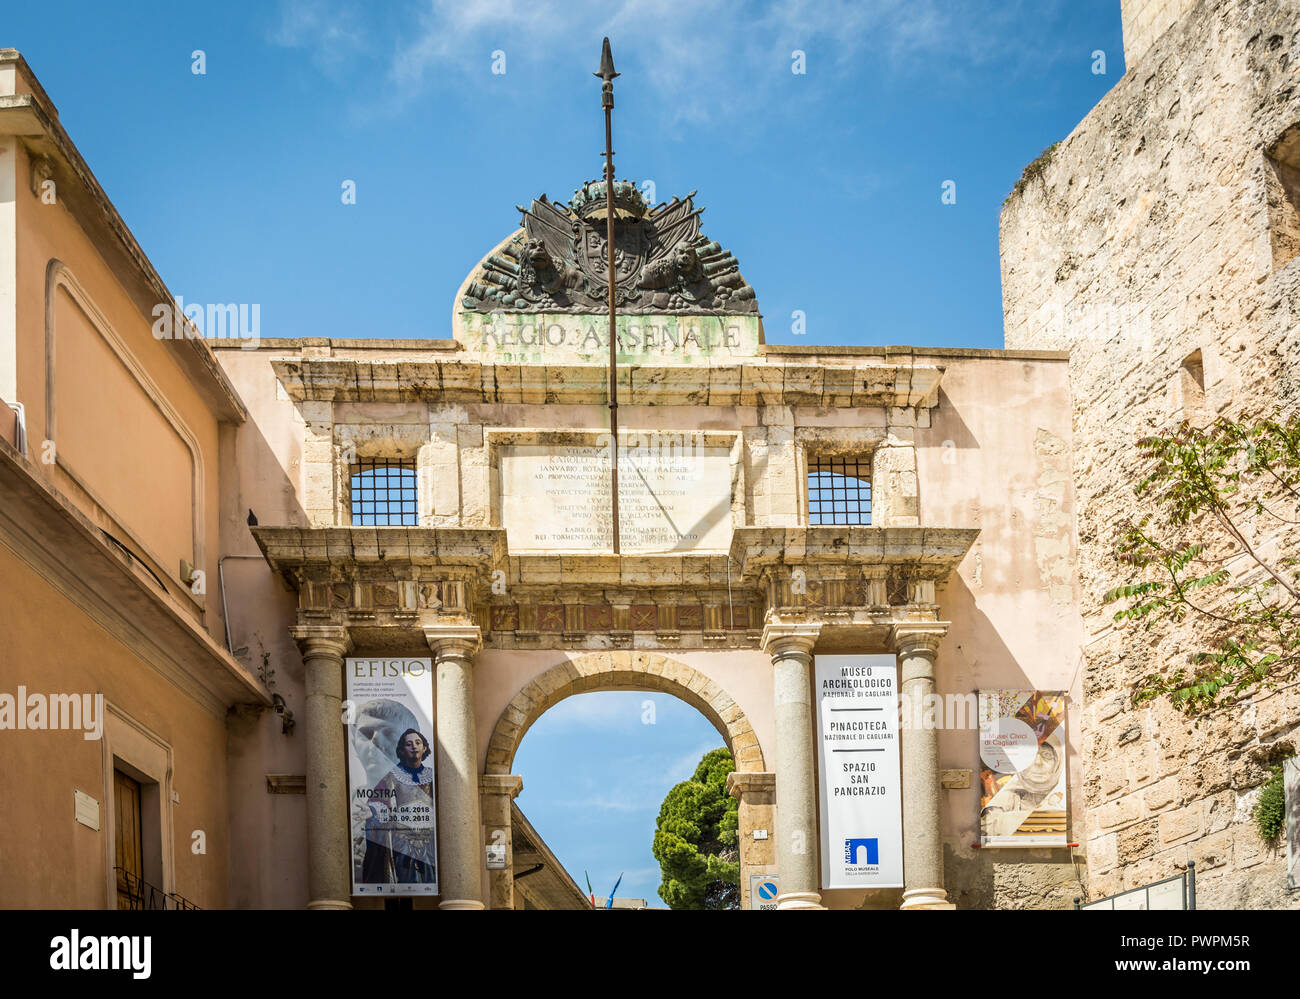 Entrée du musée national d'archéologie dans le quartier du château de Cagliari, Sardaigne. Le musée se trouve dans le centre historique de Cagliari Banque D'Images